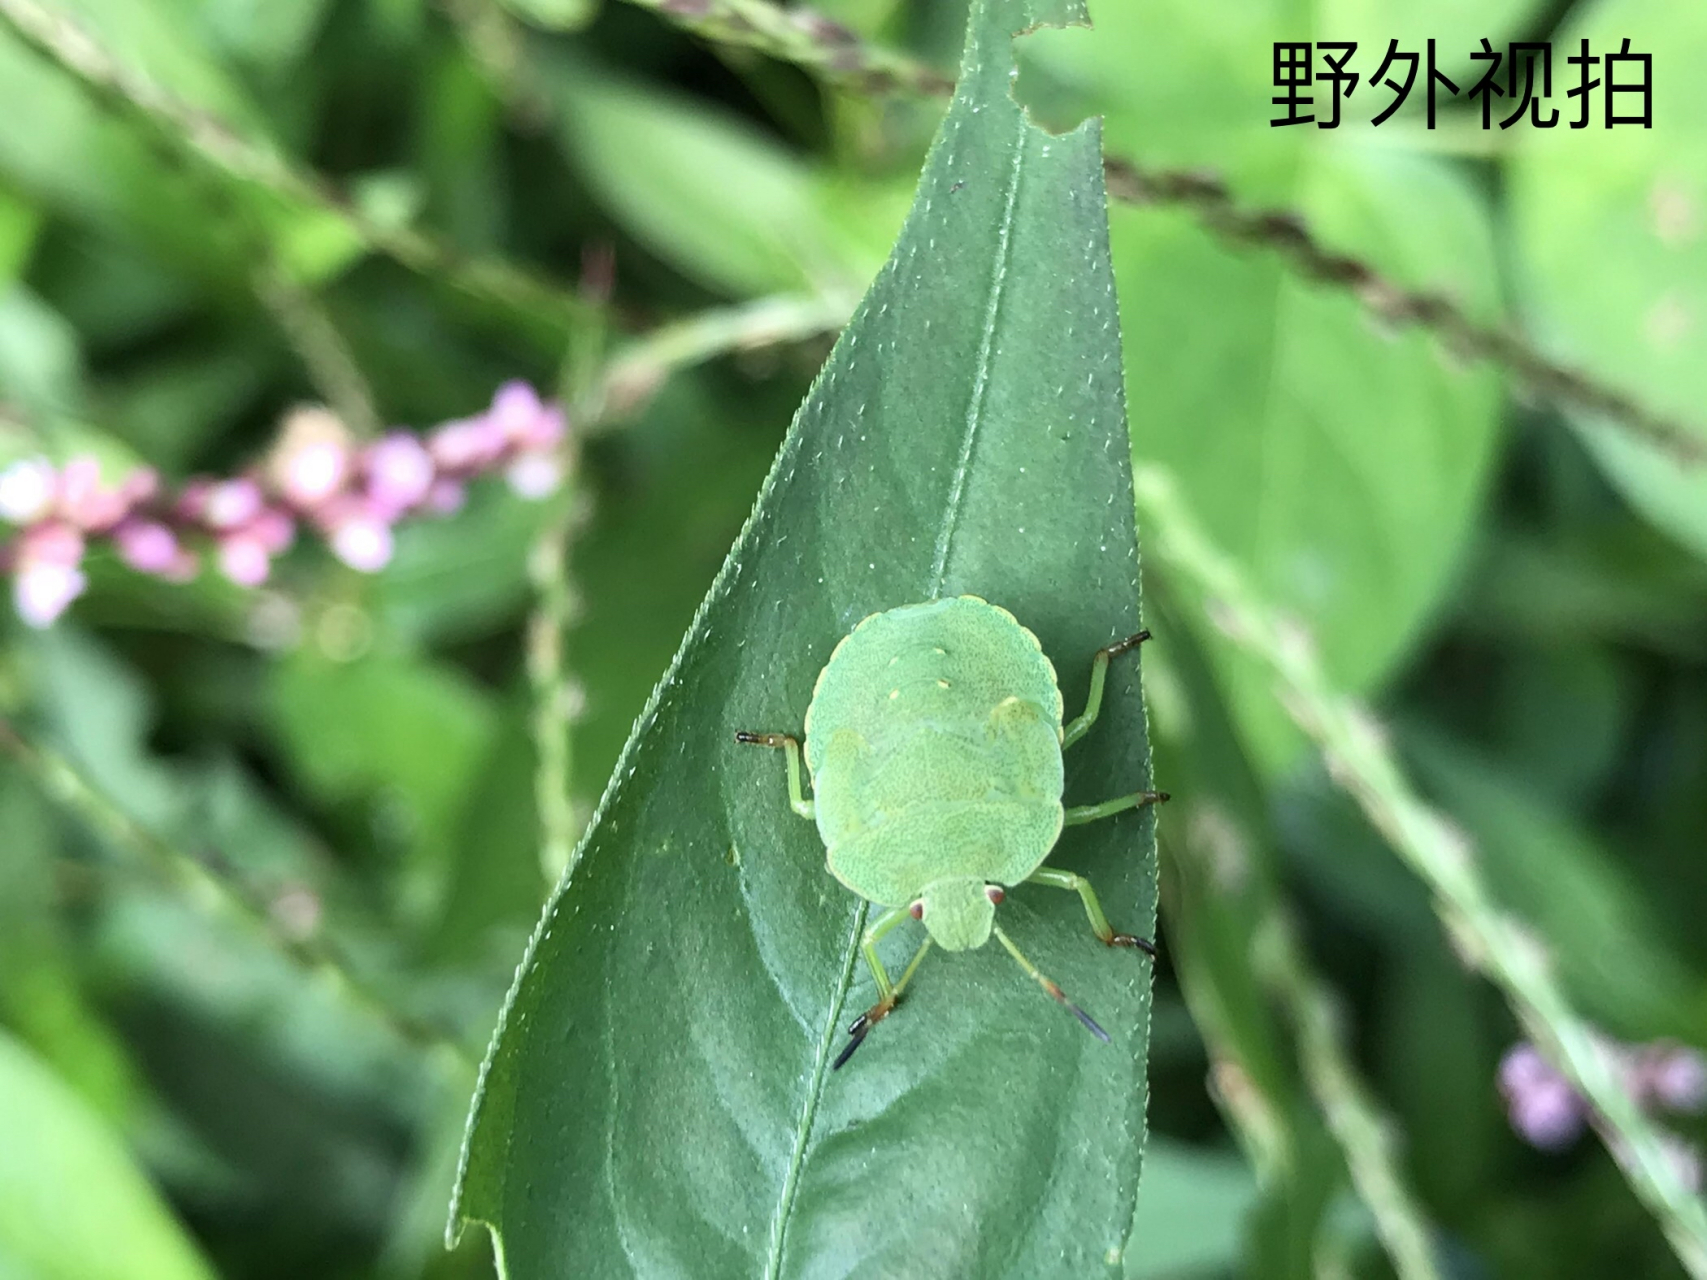 这是一只绿蝽蟓,它的身影常常会出现在植物的枝叶上